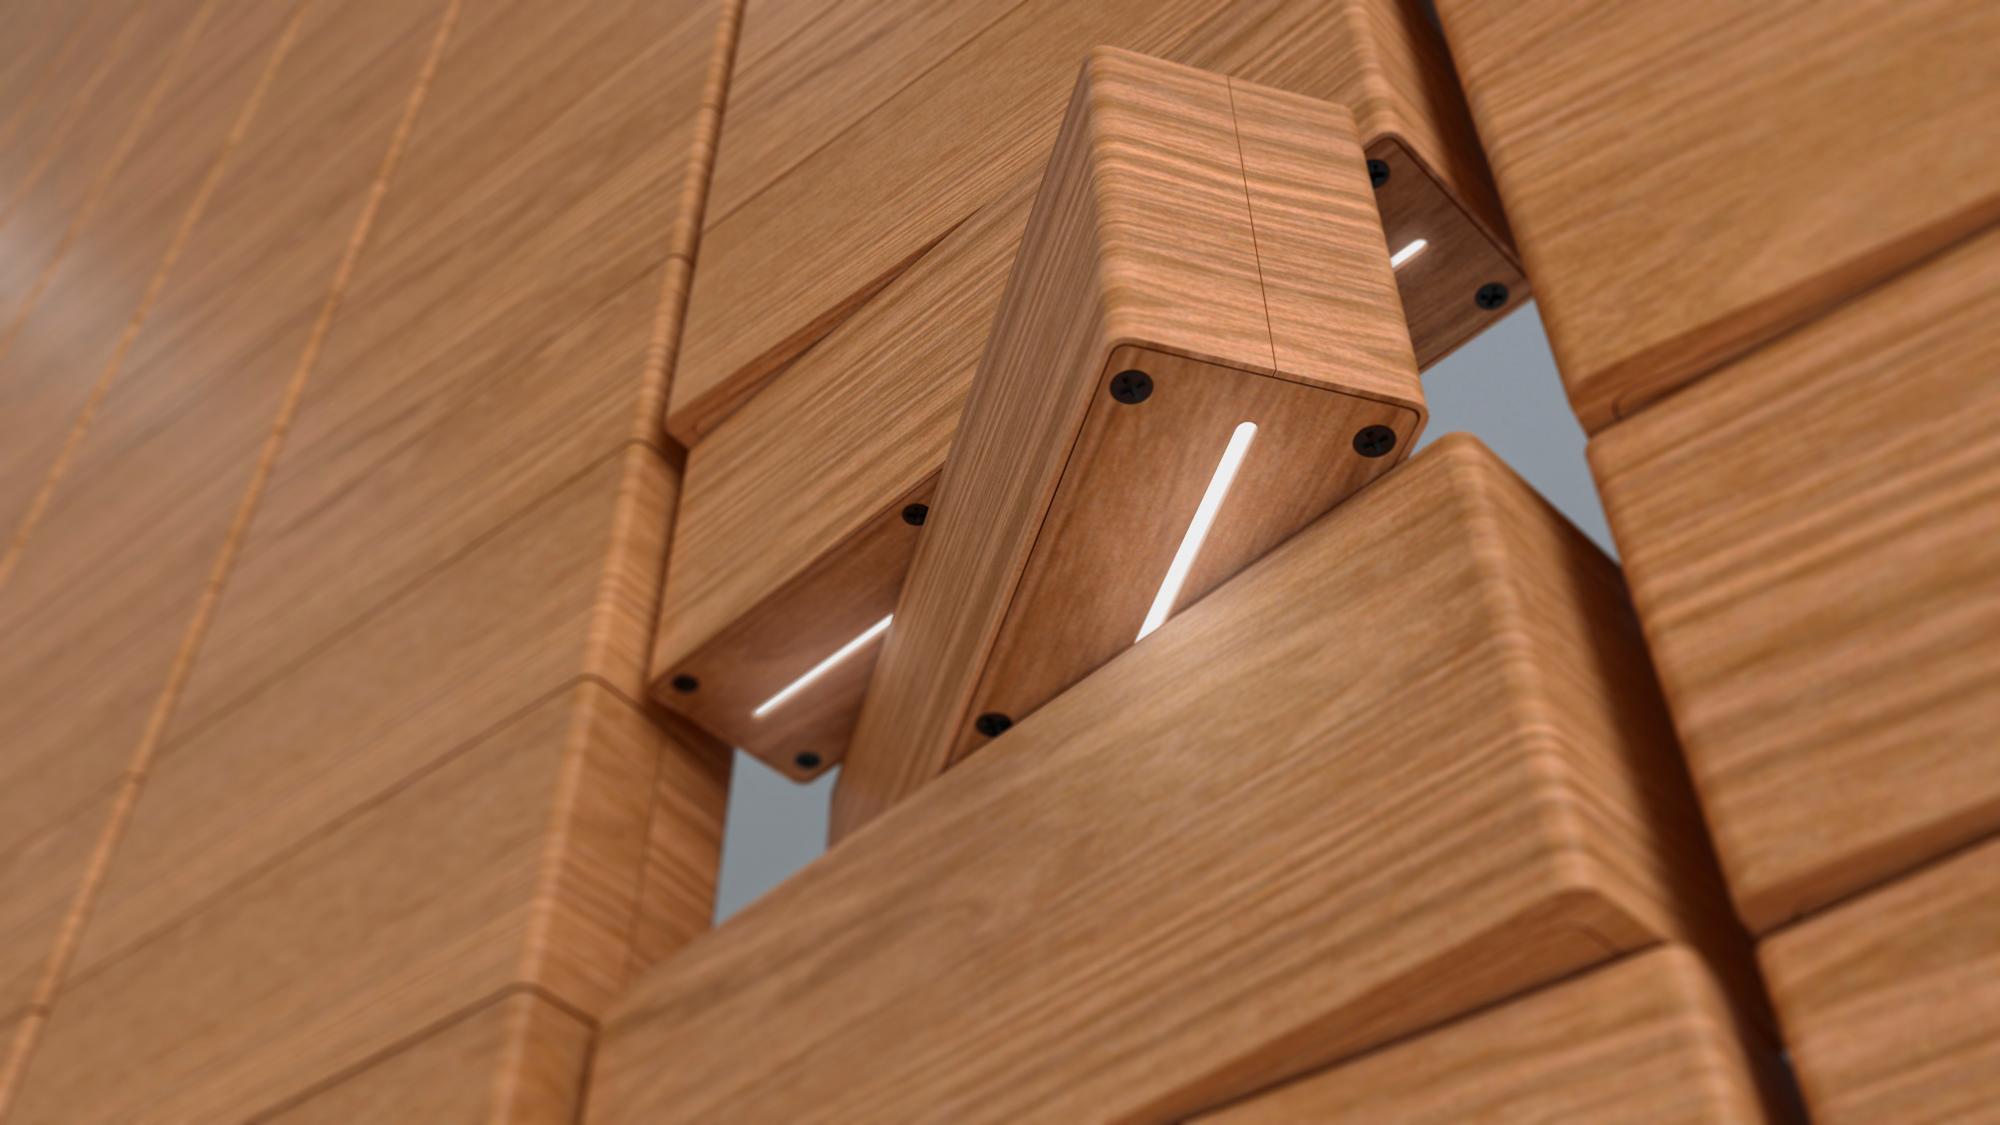 Detalle de unos brixels; con la luz LED interior, en este caso conformados en madera.